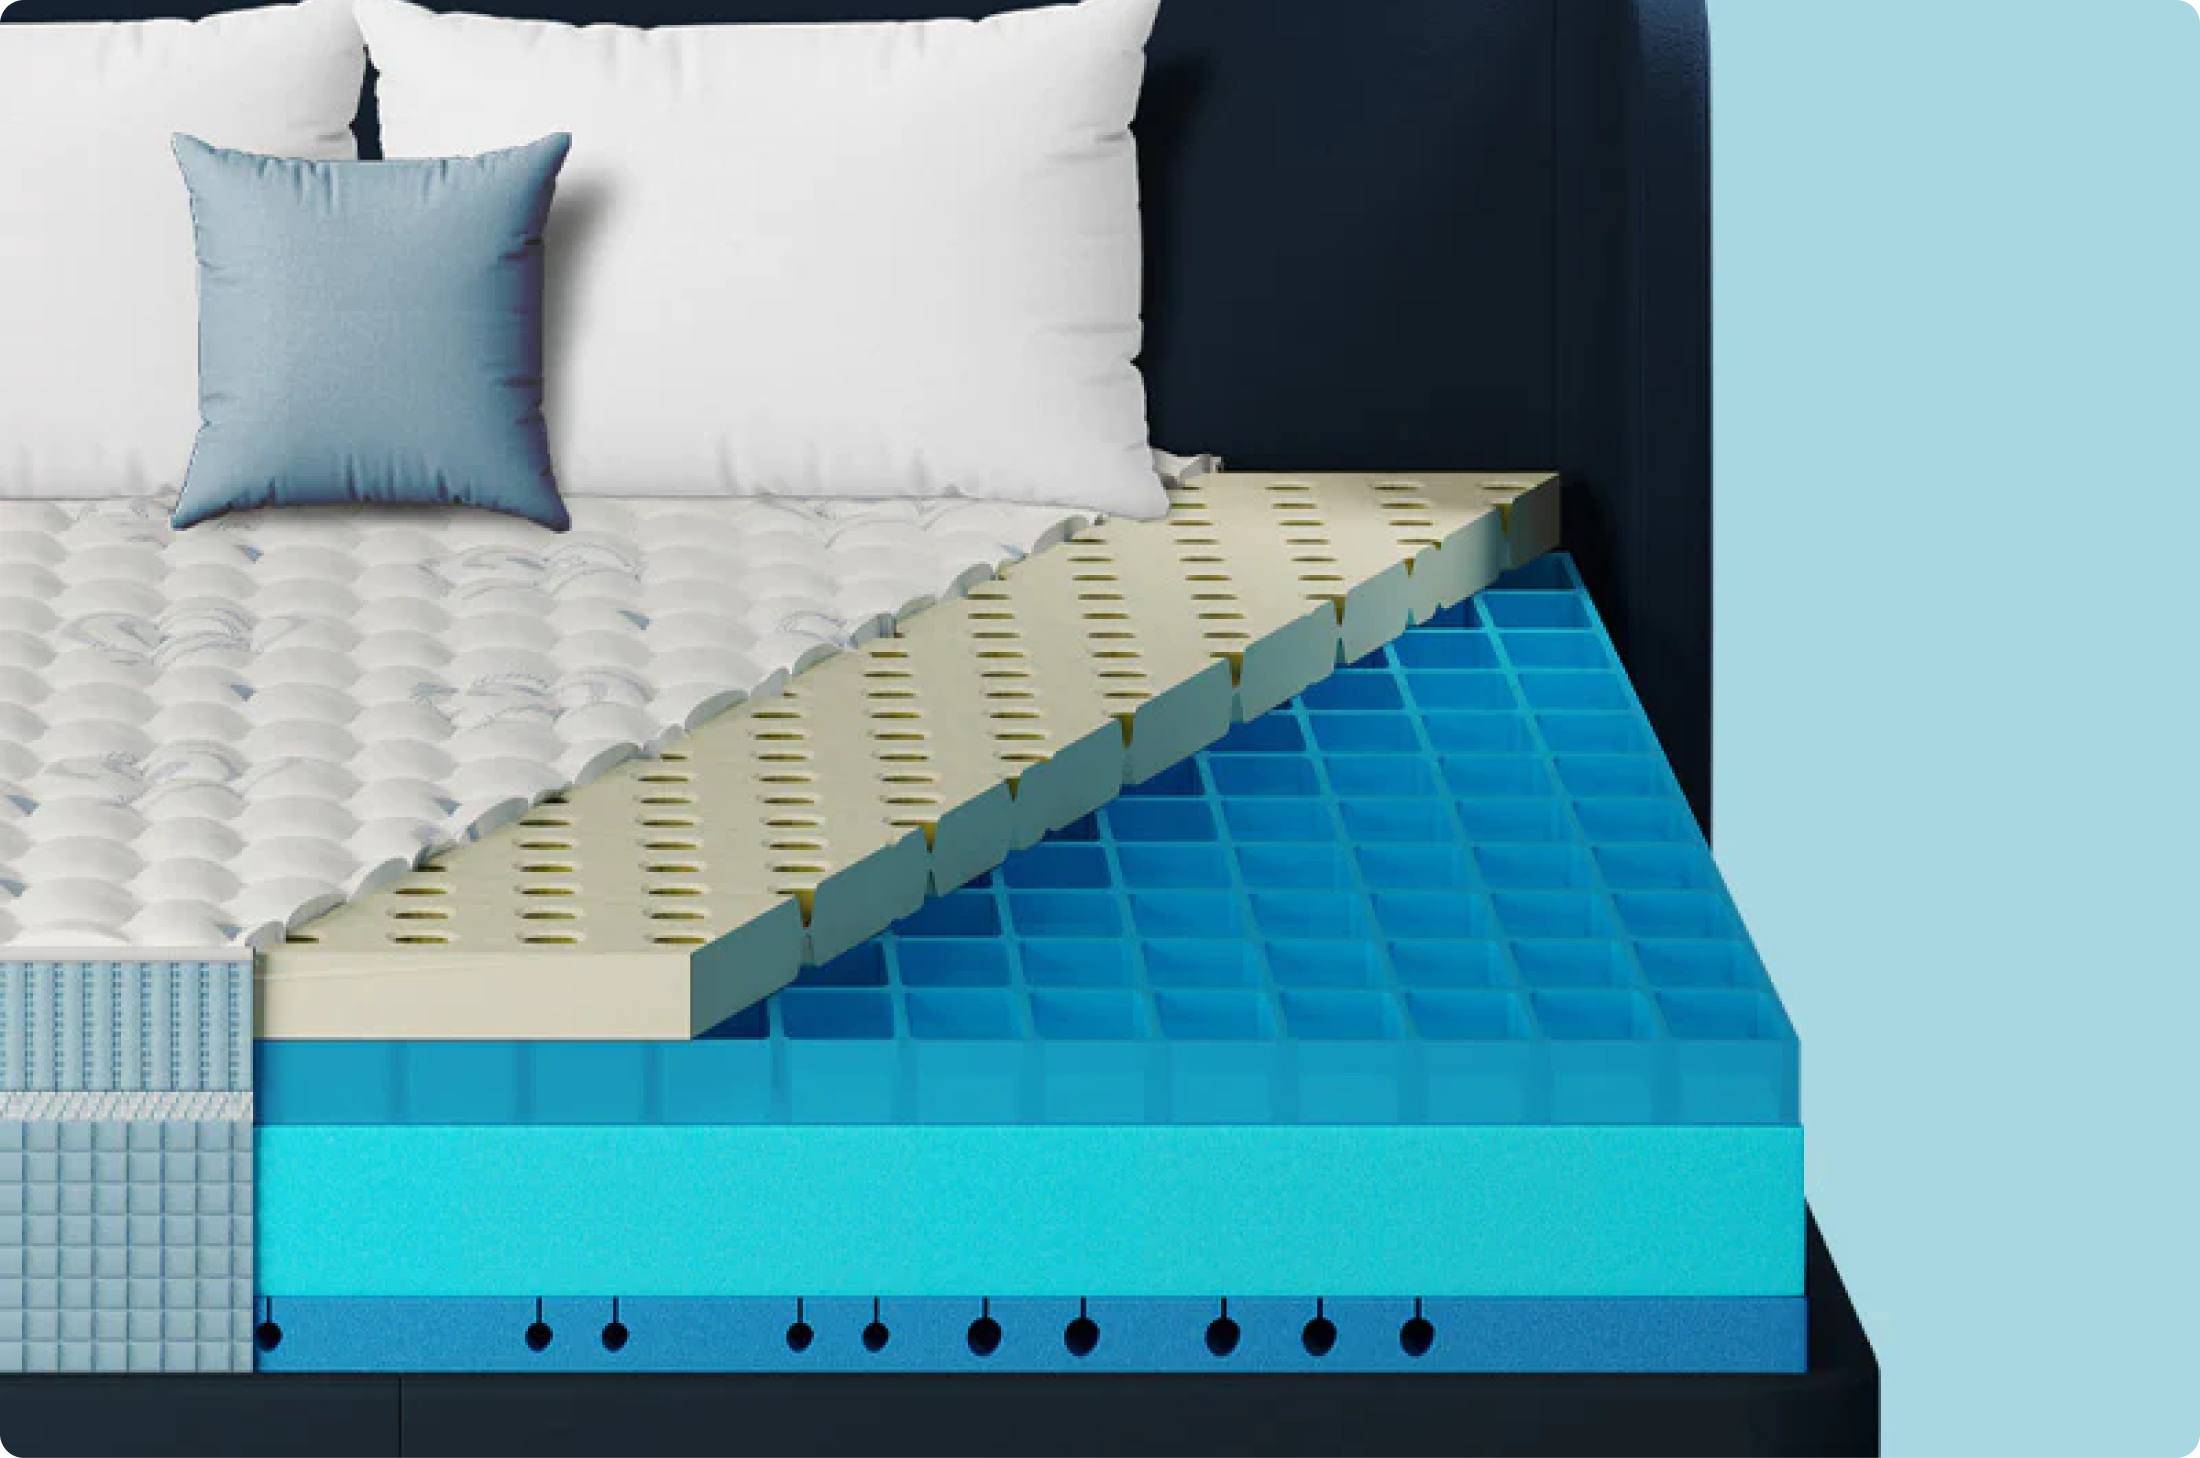 mattress_image